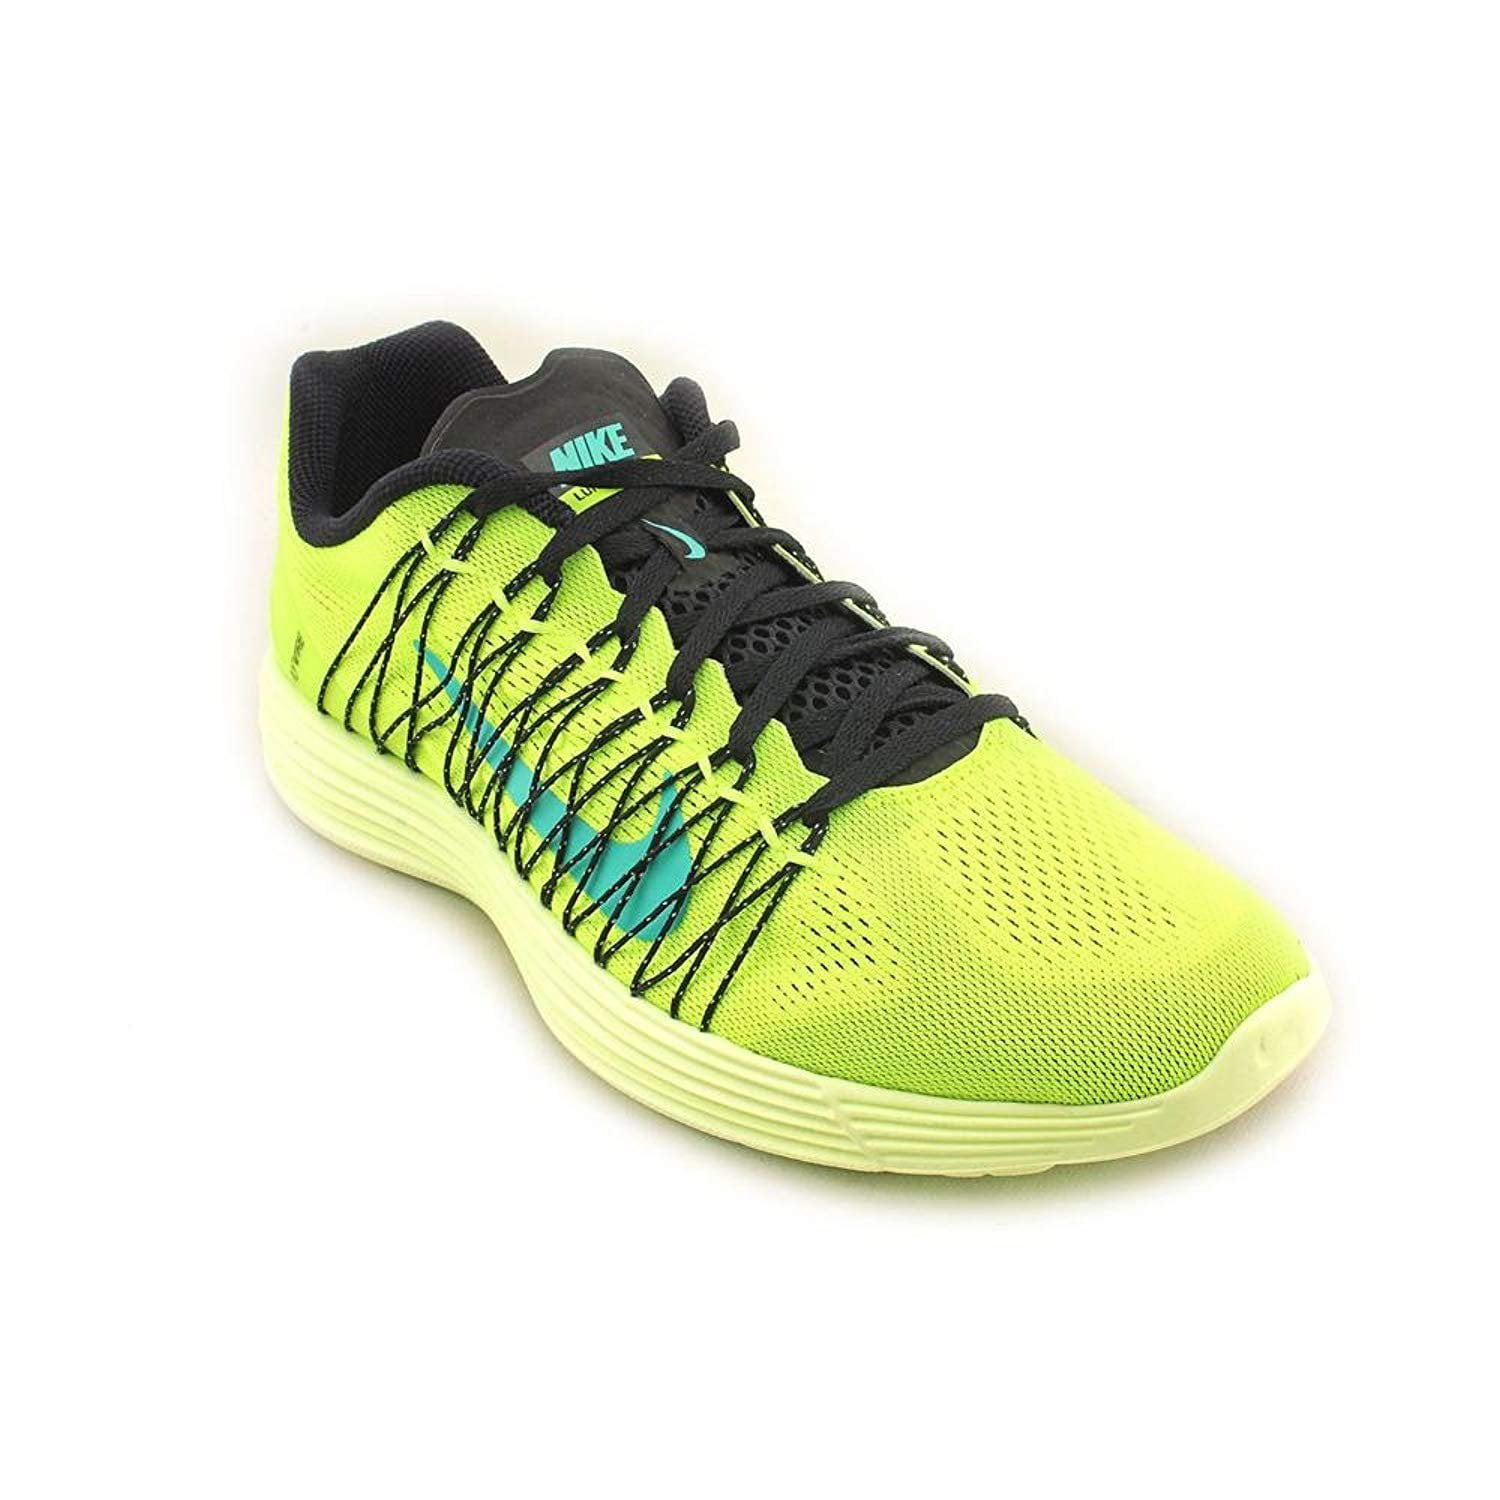 Nike Men's Lunaracer Racing Running Shoe - Walmart.com